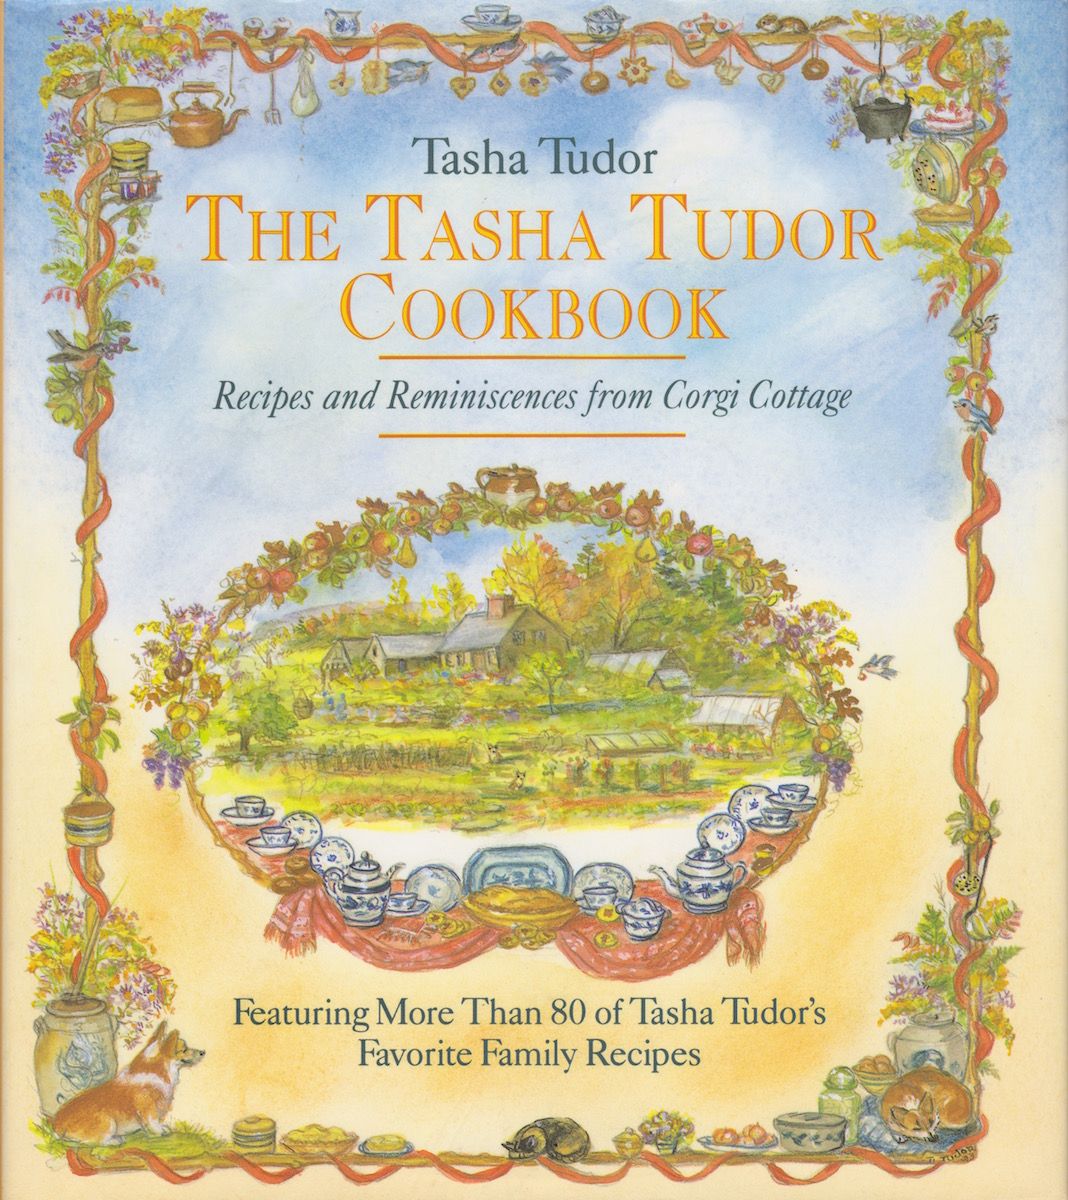 tasha-tudor-cookbook-cover